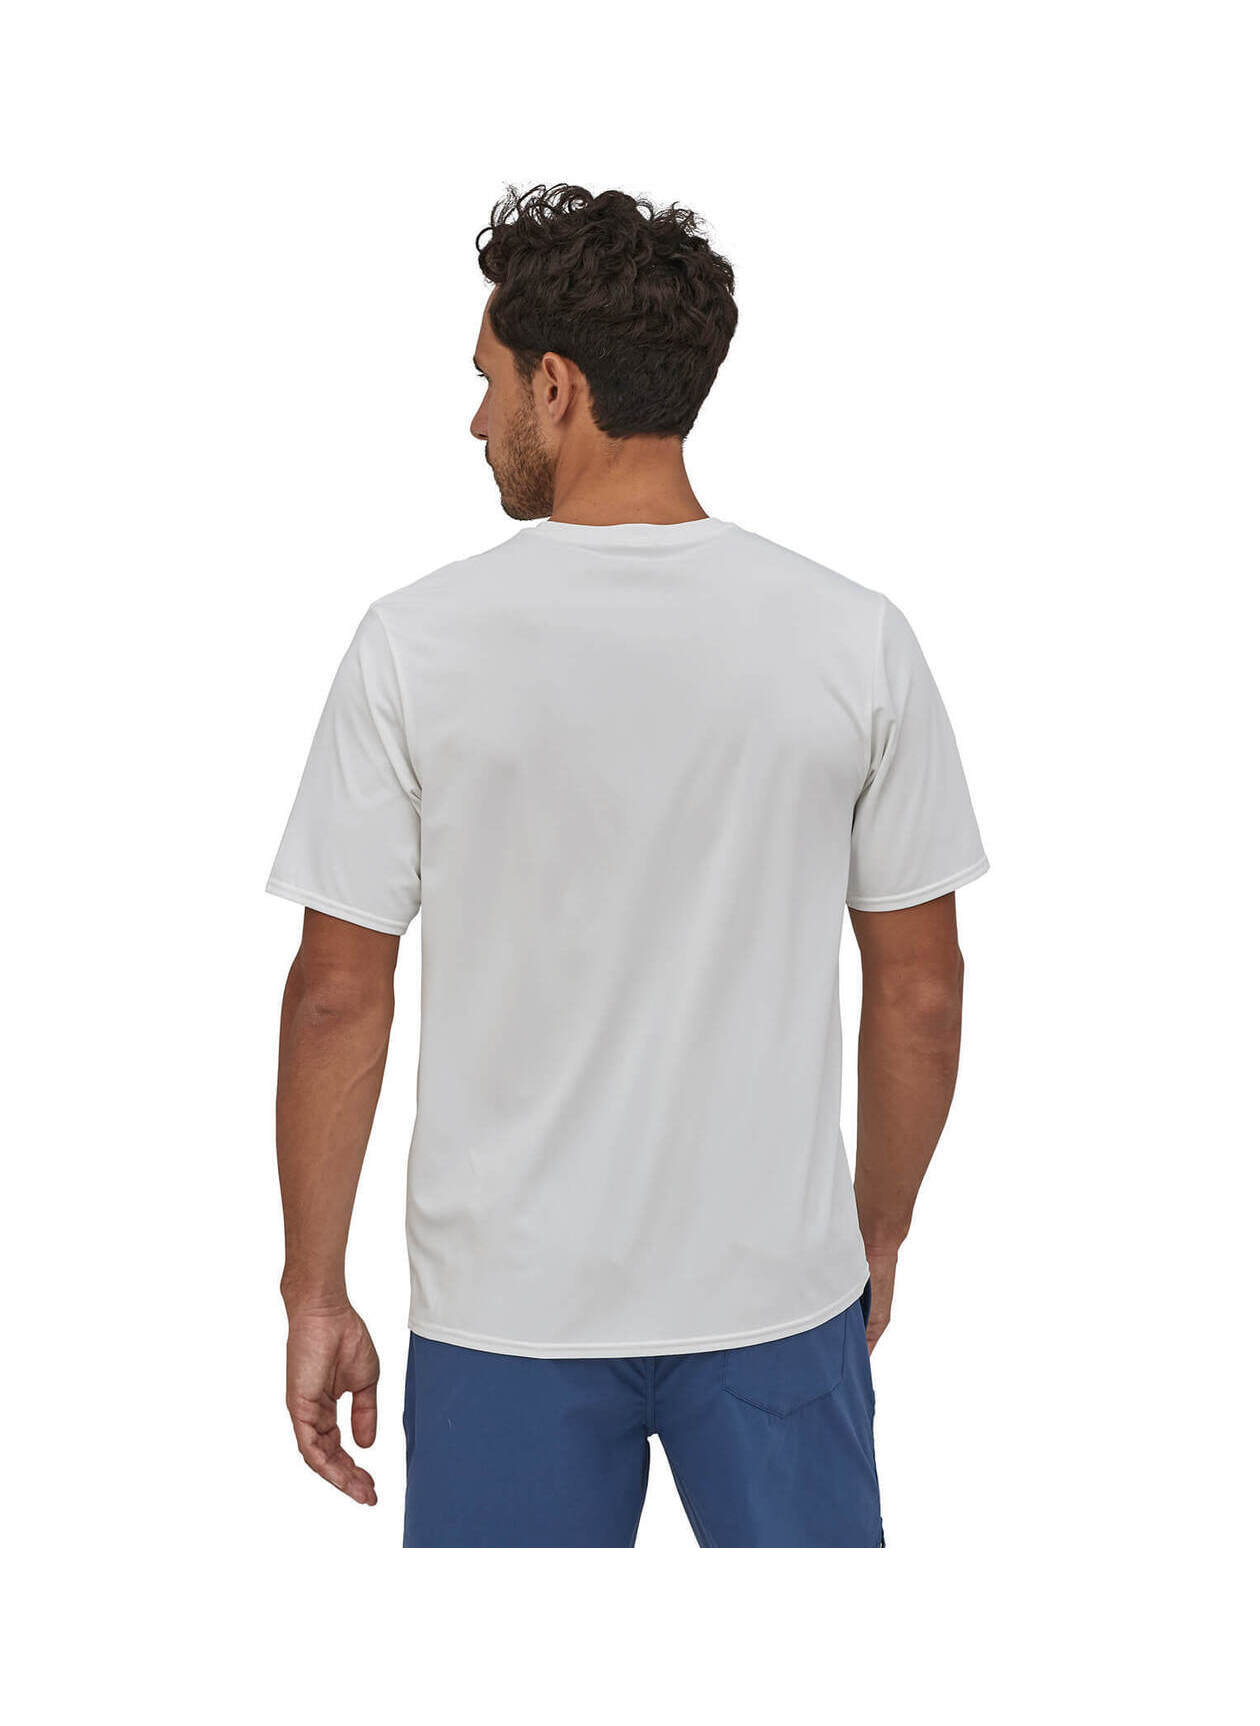 Patagonia Men's White Cap Cool Daily T-Shirt